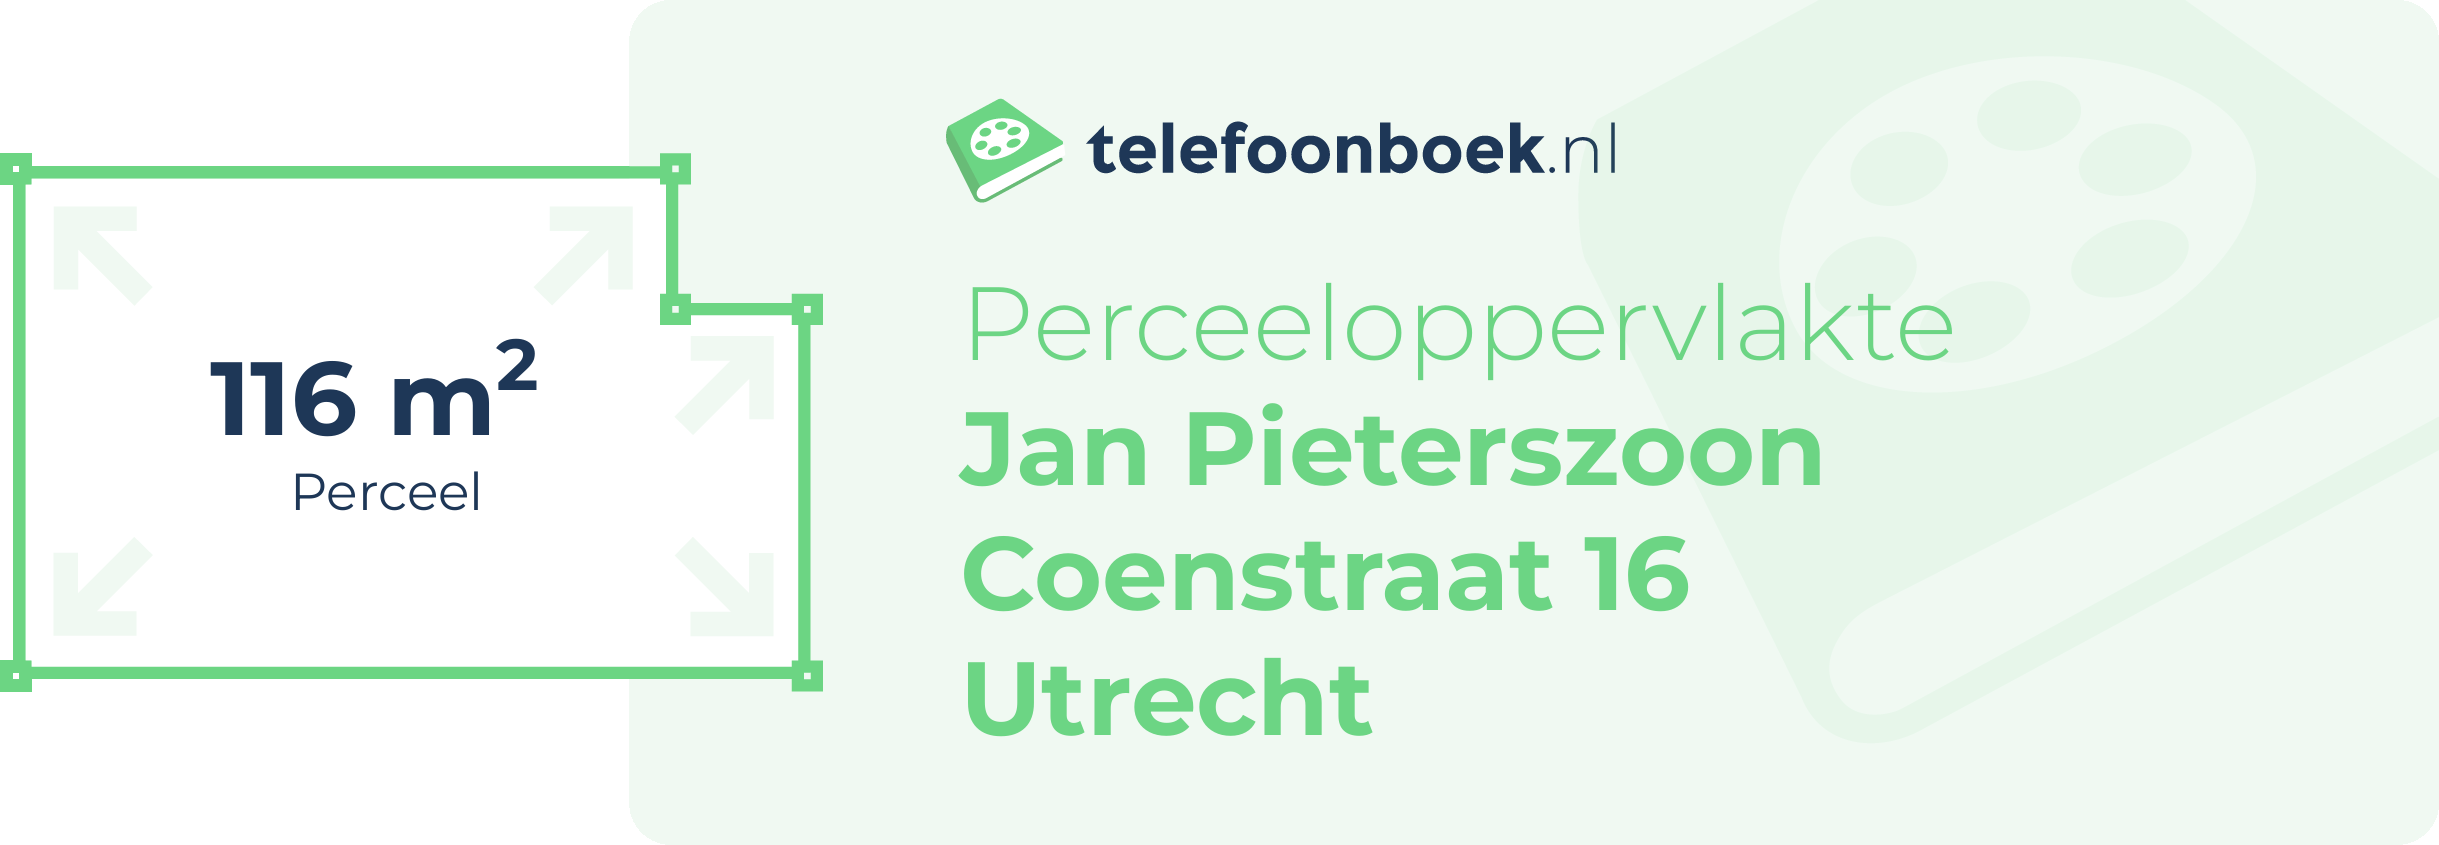 Perceeloppervlakte Jan Pieterszoon Coenstraat 16 Utrecht